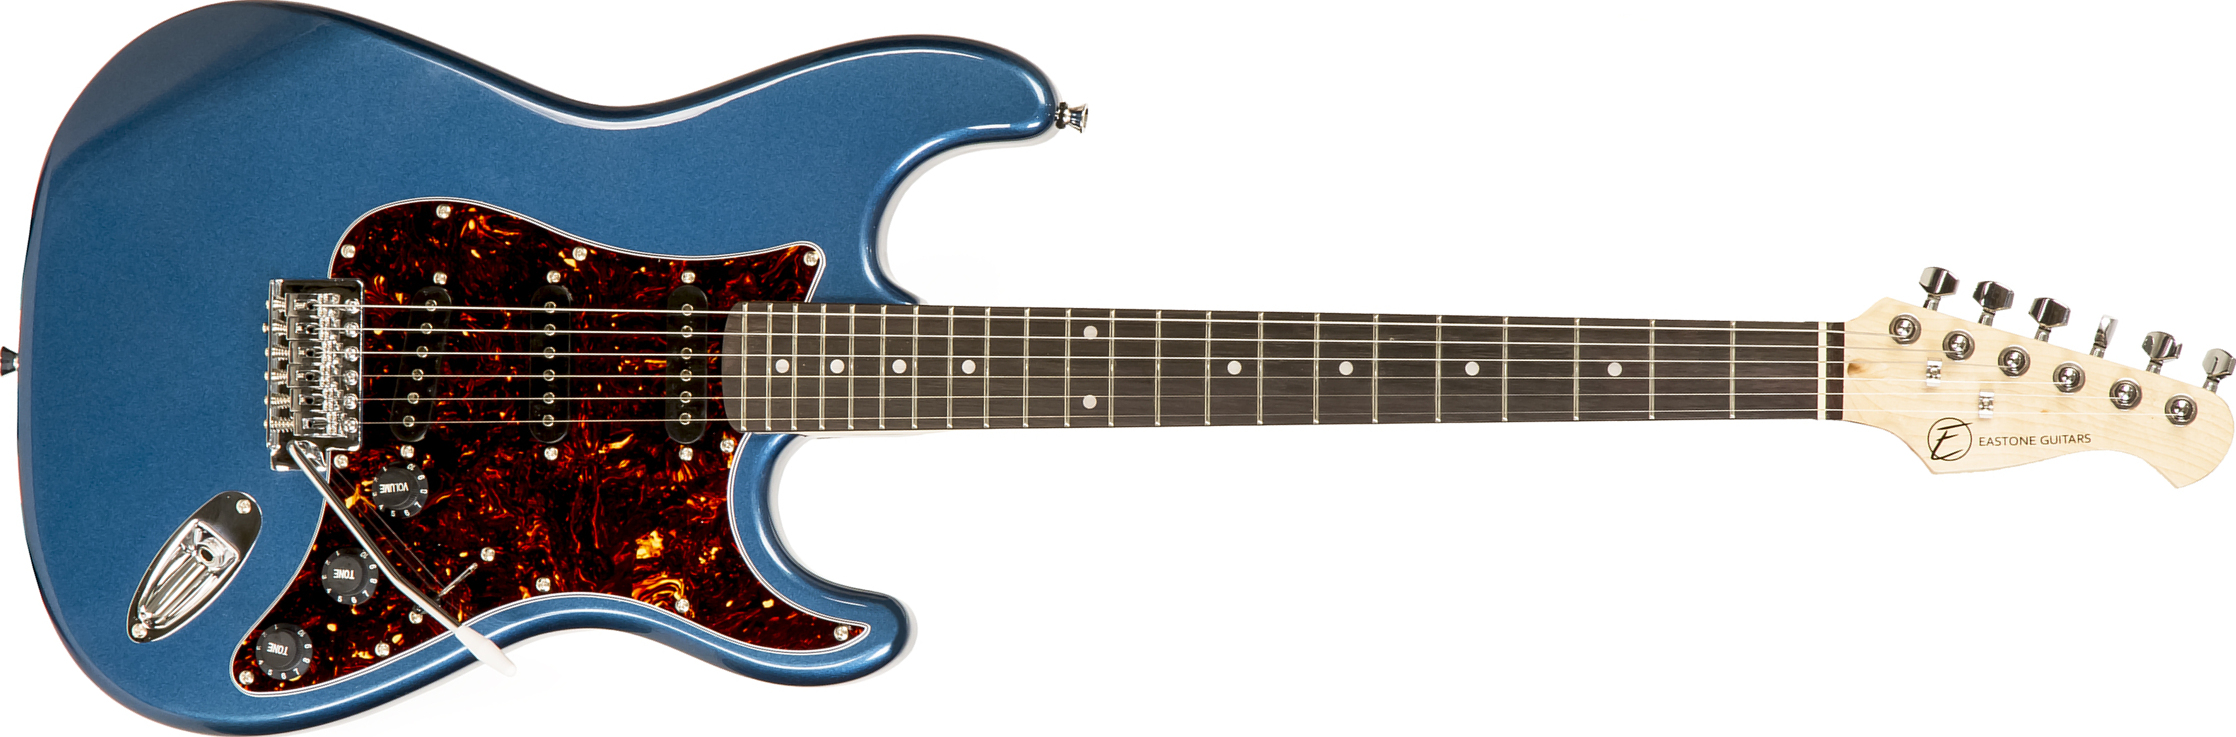 Eastone Str70t 3s Trem Pur - Lake Placid Blue - Guitarra eléctrica con forma de str. - Main picture